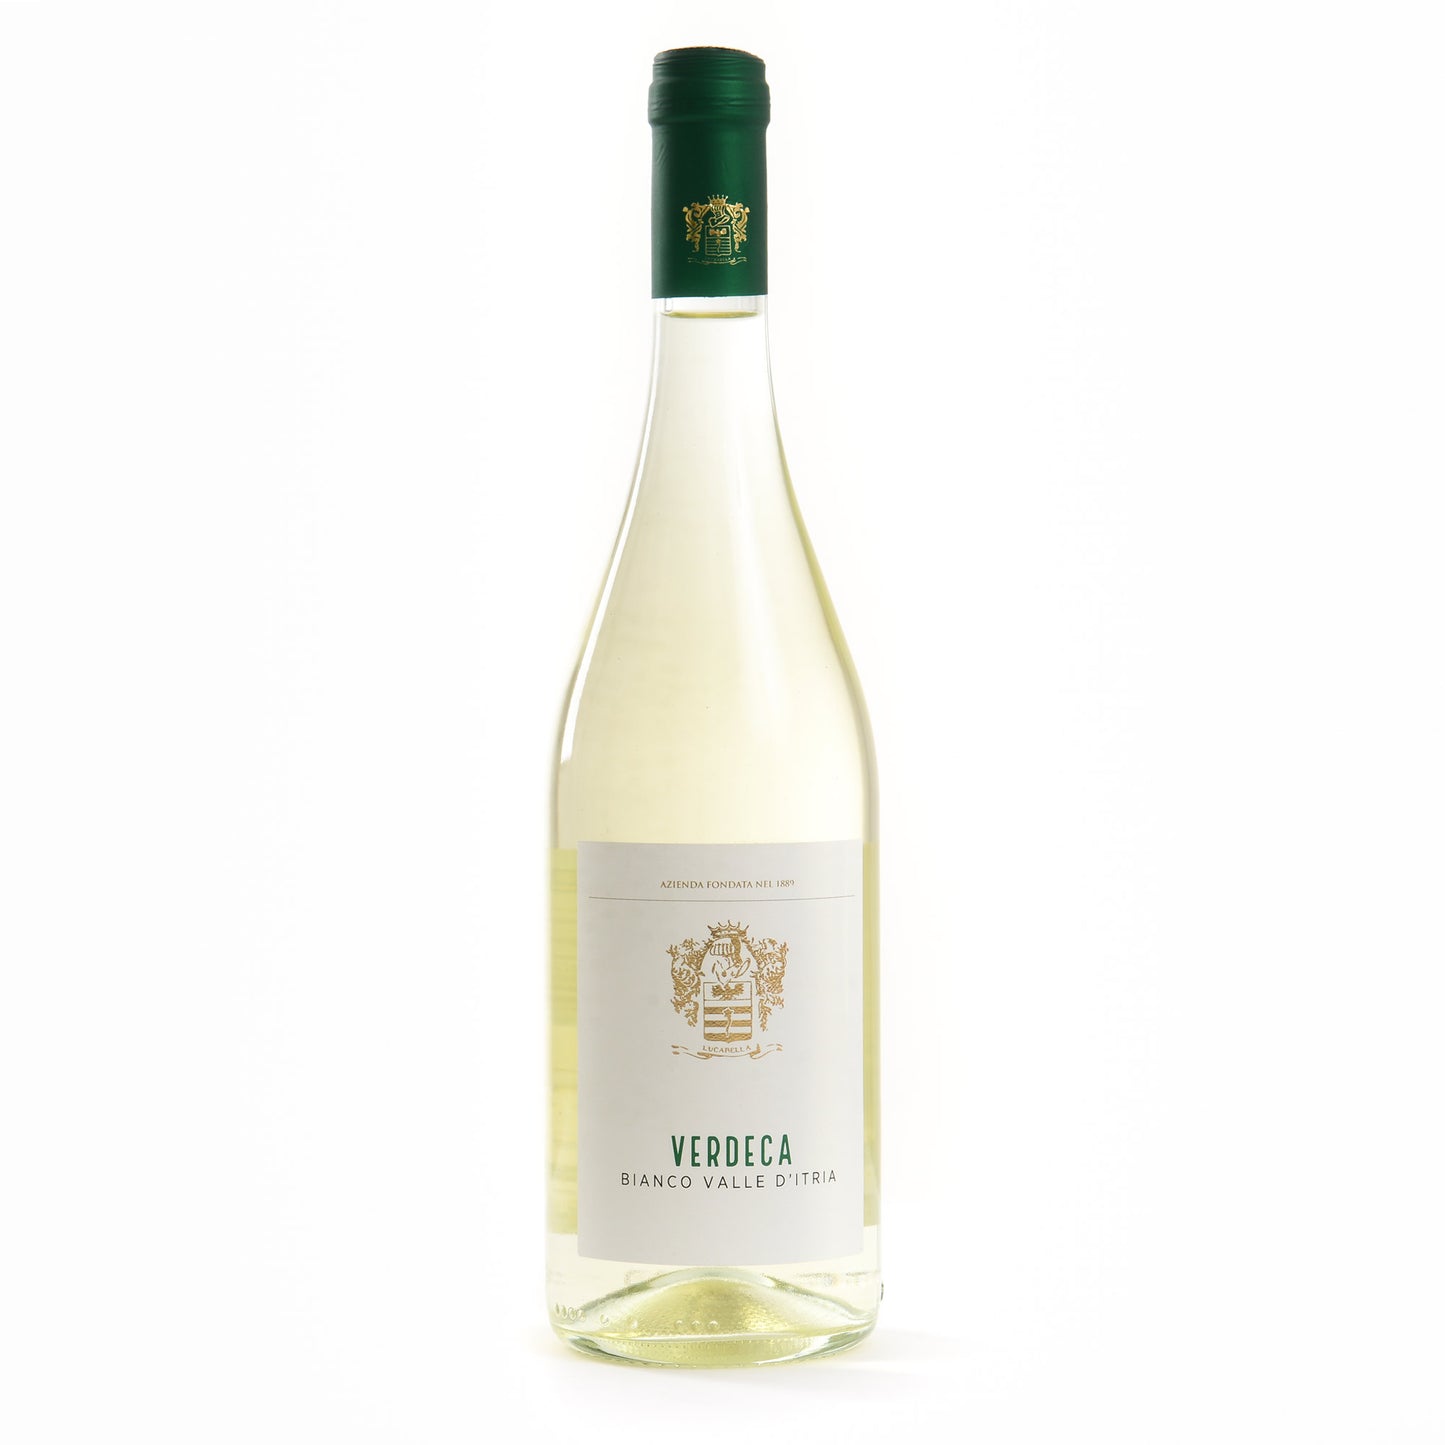 Verdeca white wine - L'Acropoli di Puglia